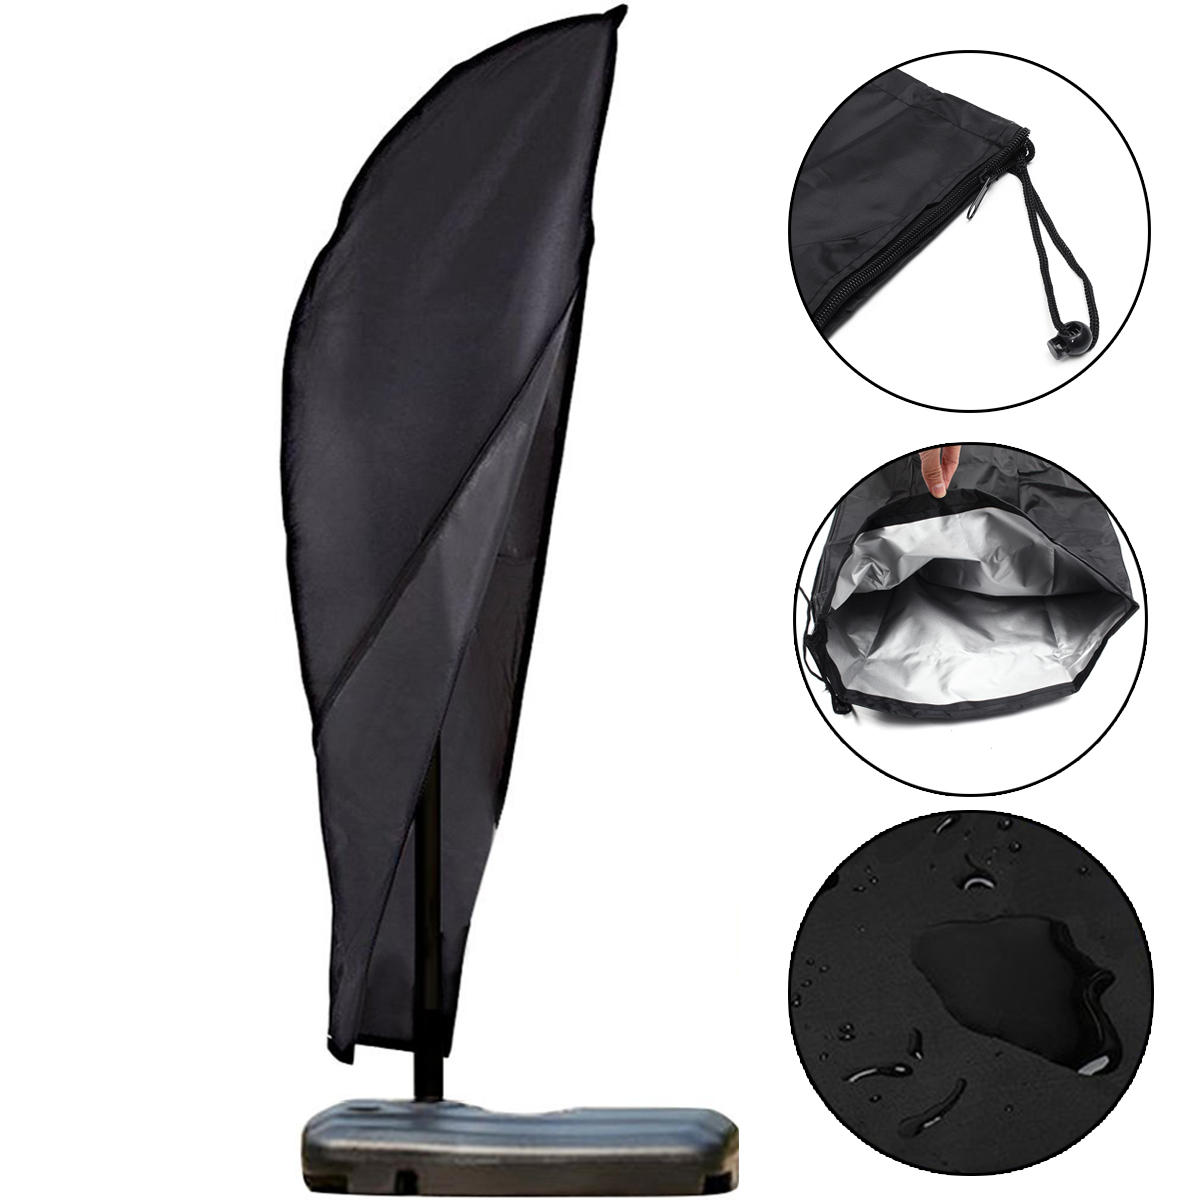 Outdoor Patio Yard Parasol Umbrella Waterproof Shade Cover UV Dust Protector